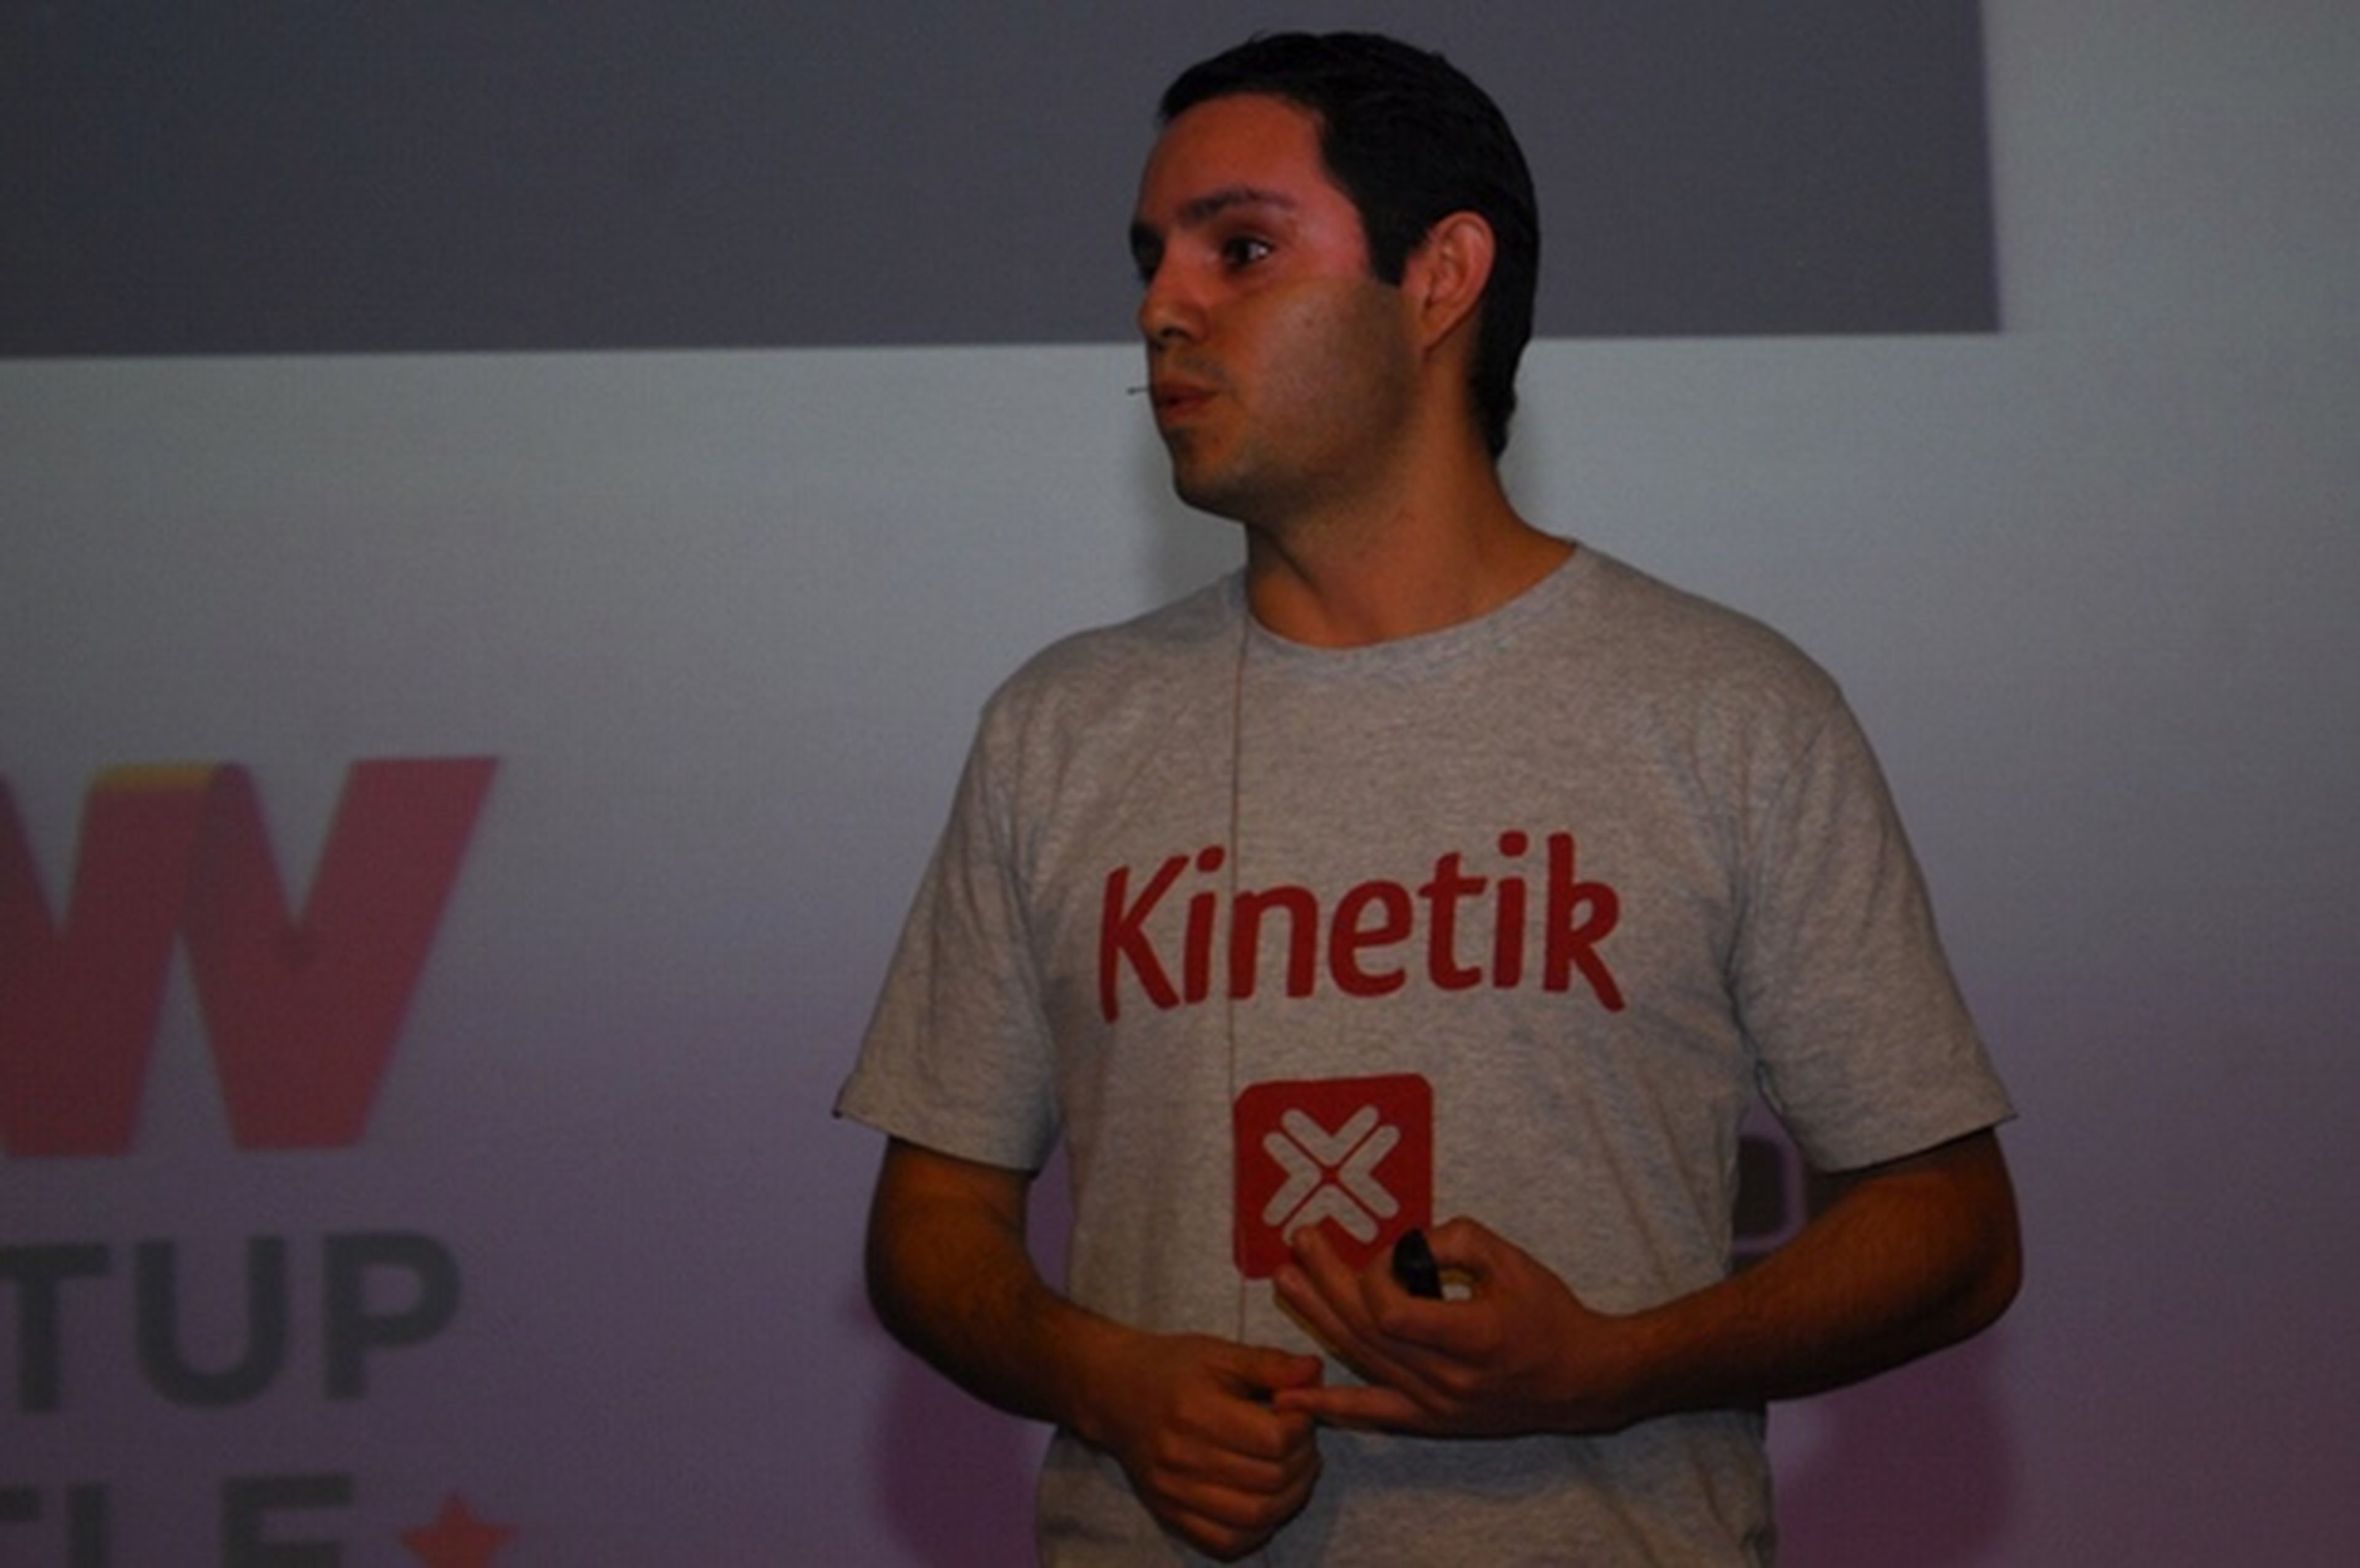 Kinetik CEO Raúl Moreno